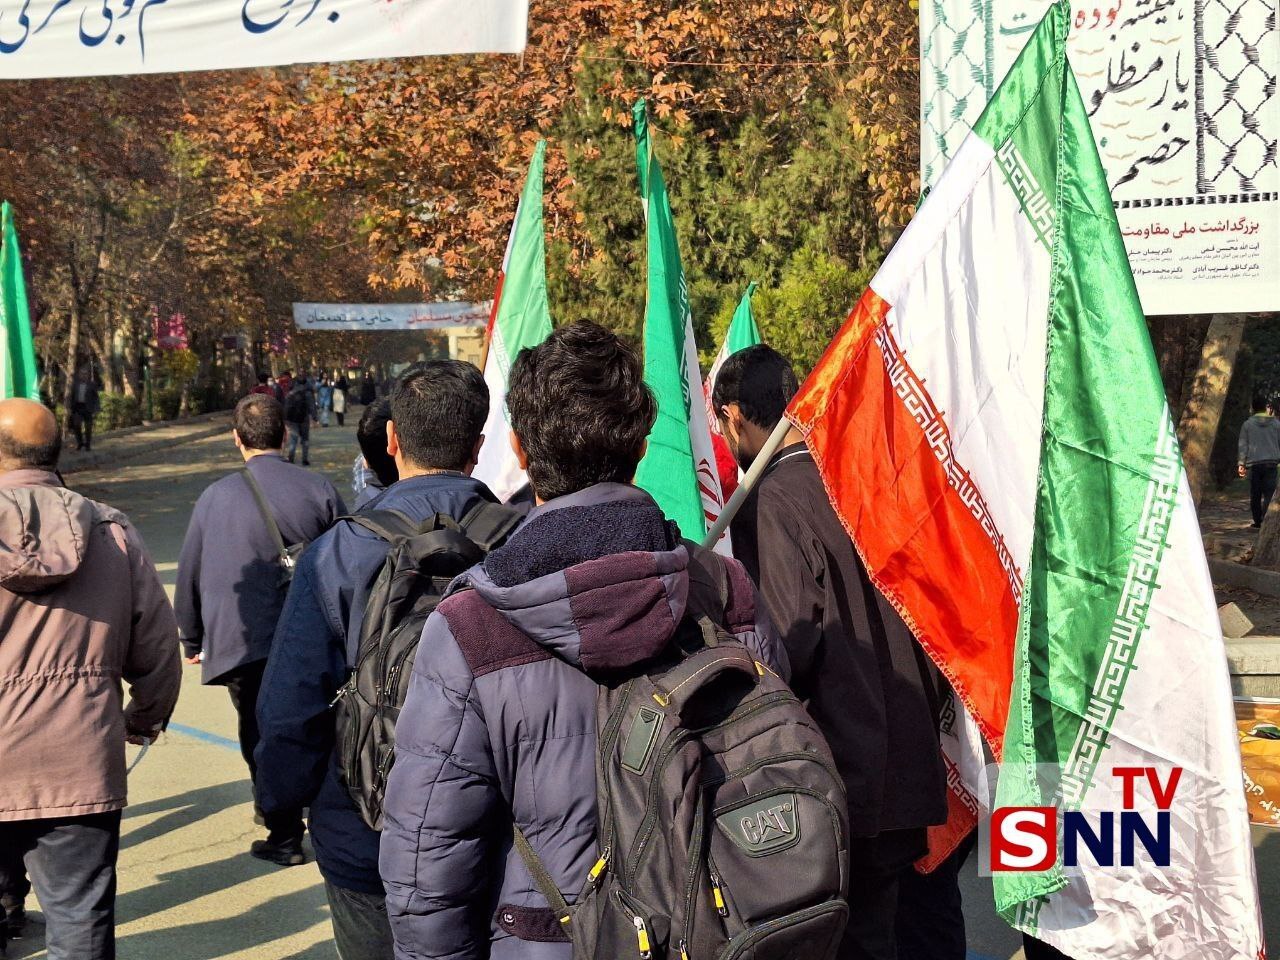 اجتماع و راهپیمایی دانشجویان دانشگاه تهران به مناسبت شانزده آذر +عکس